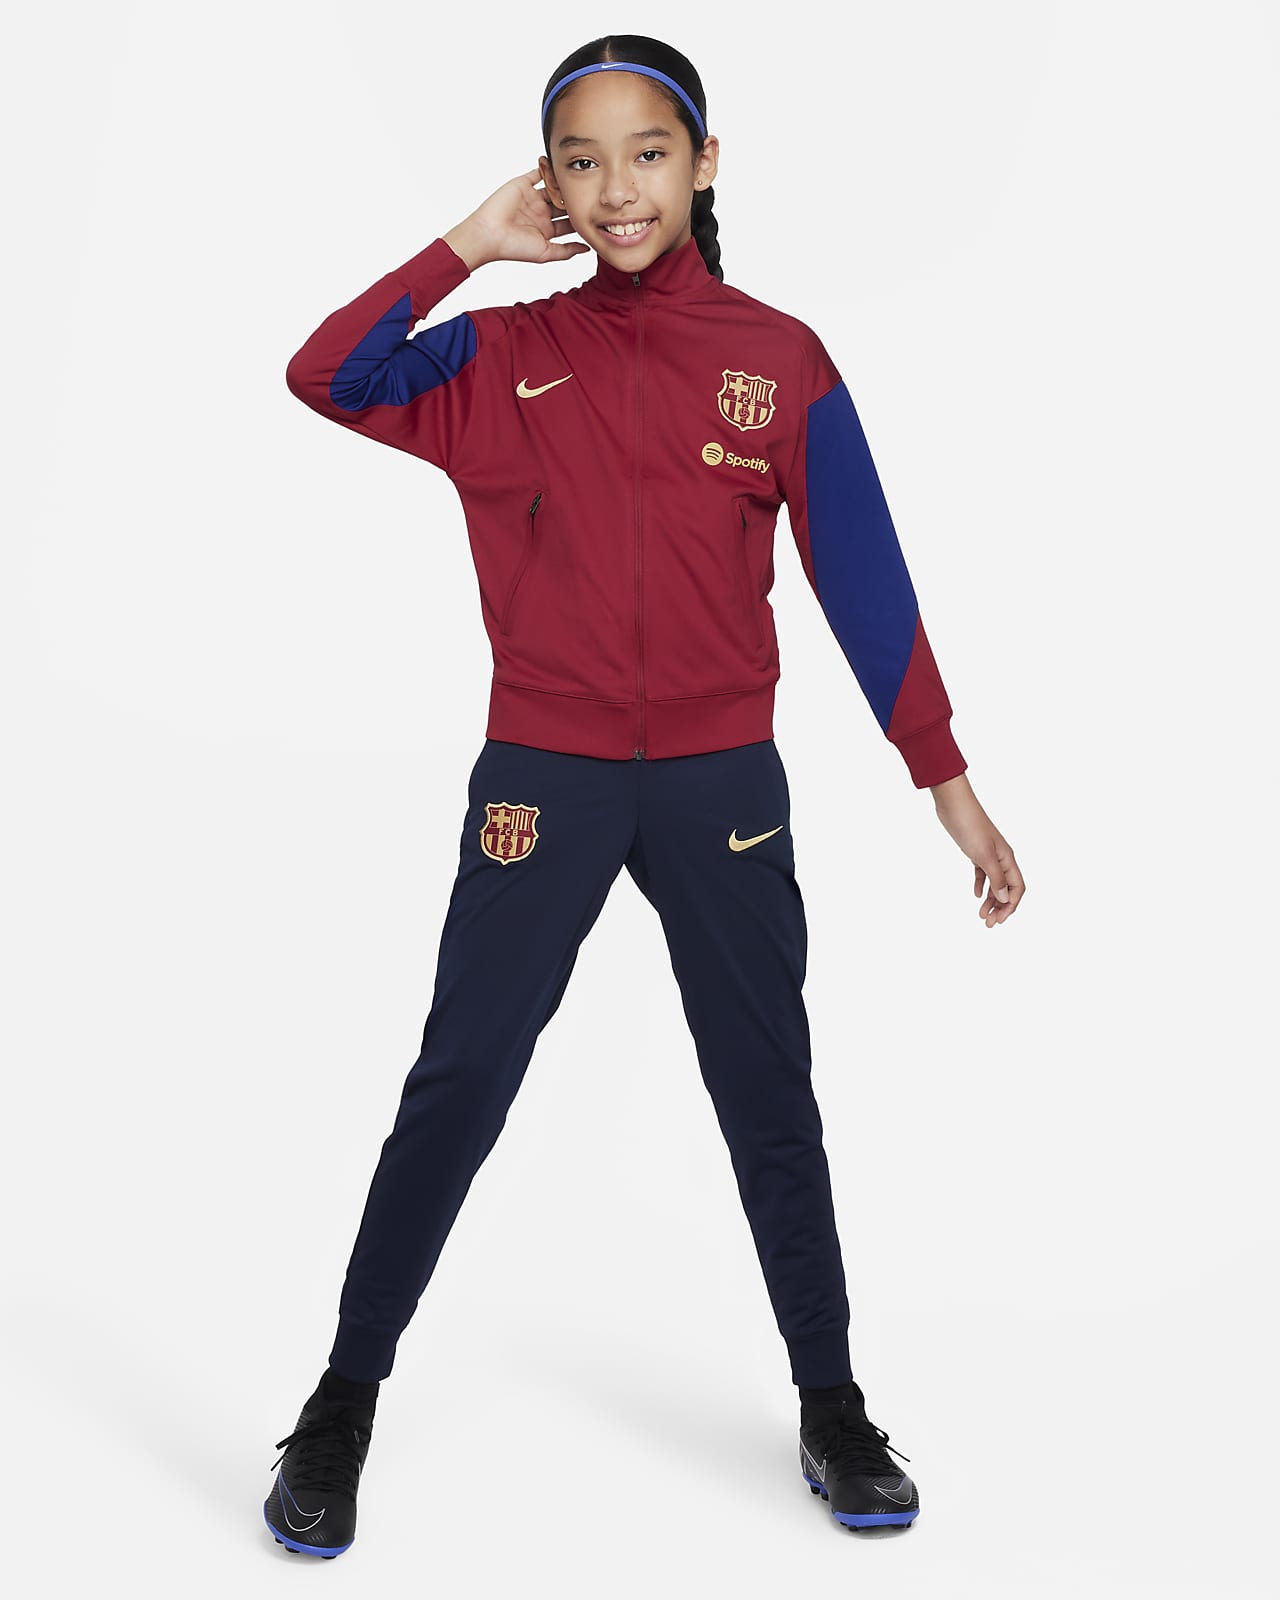 Ποδοσφαιρική πλεκτή φόρμα Nike Dri-FIT Μπαρτσελόνα Strike για μεγάλα παιδιά